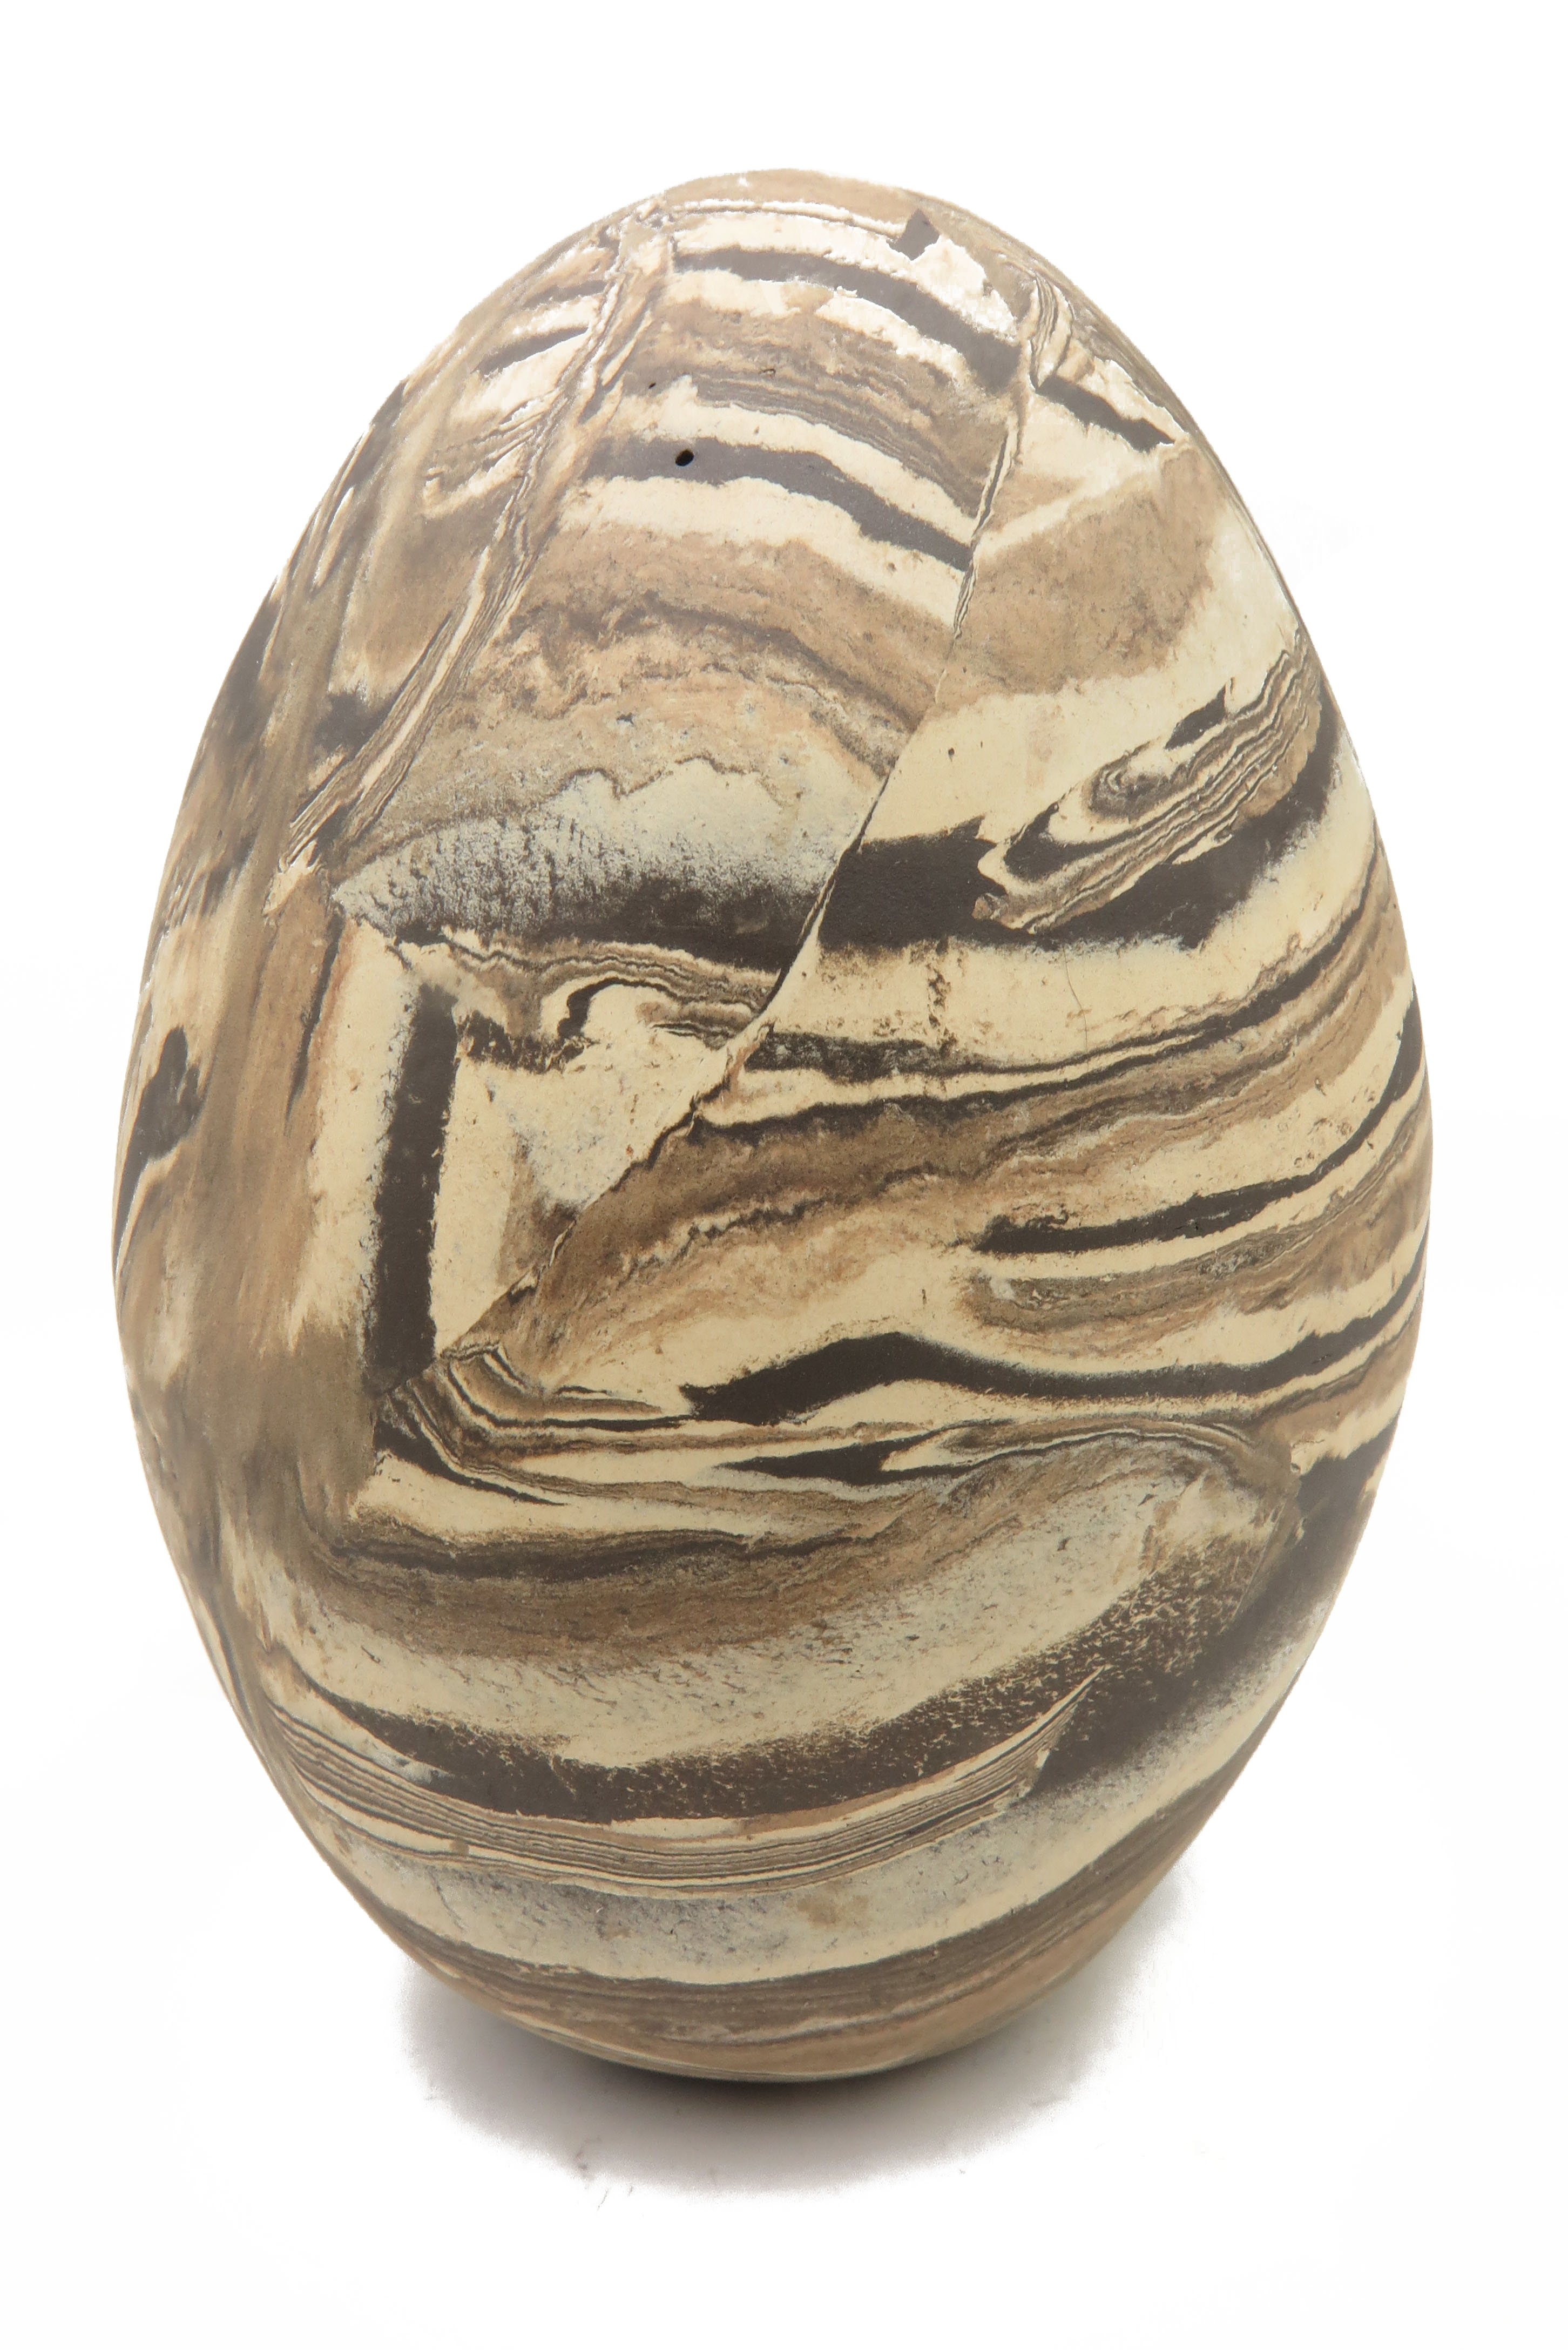  Eier wie aus Stein gehauen/ L 19 cm